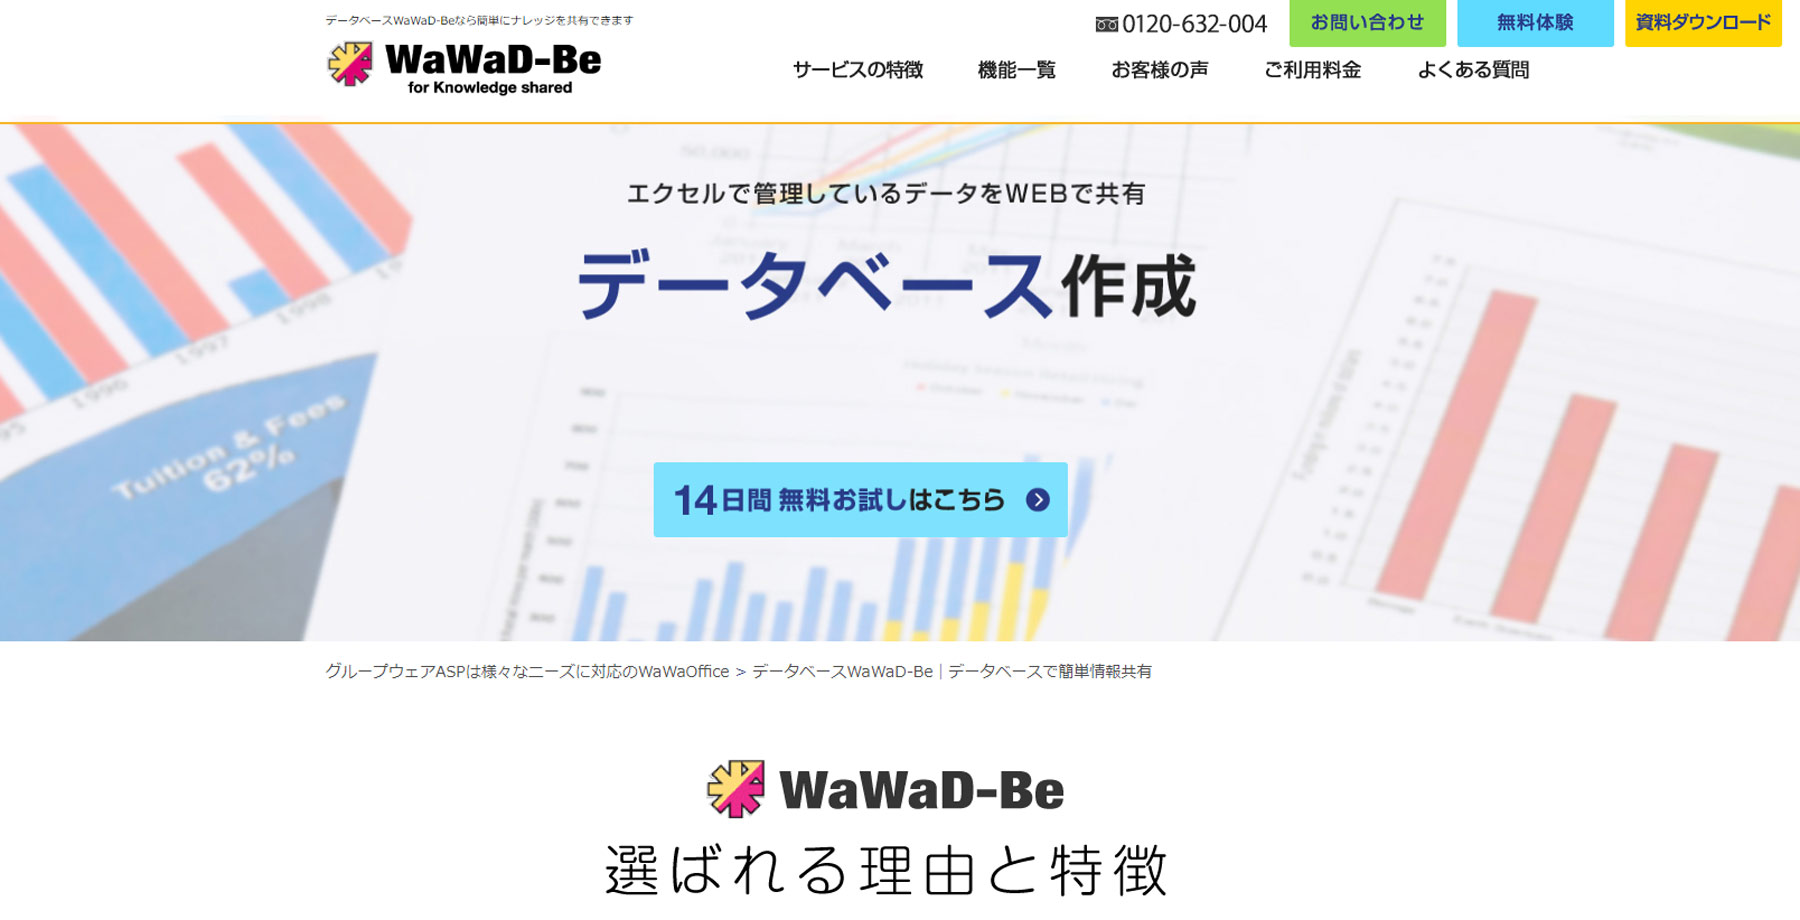 WaWaD-Be公式Webサイト